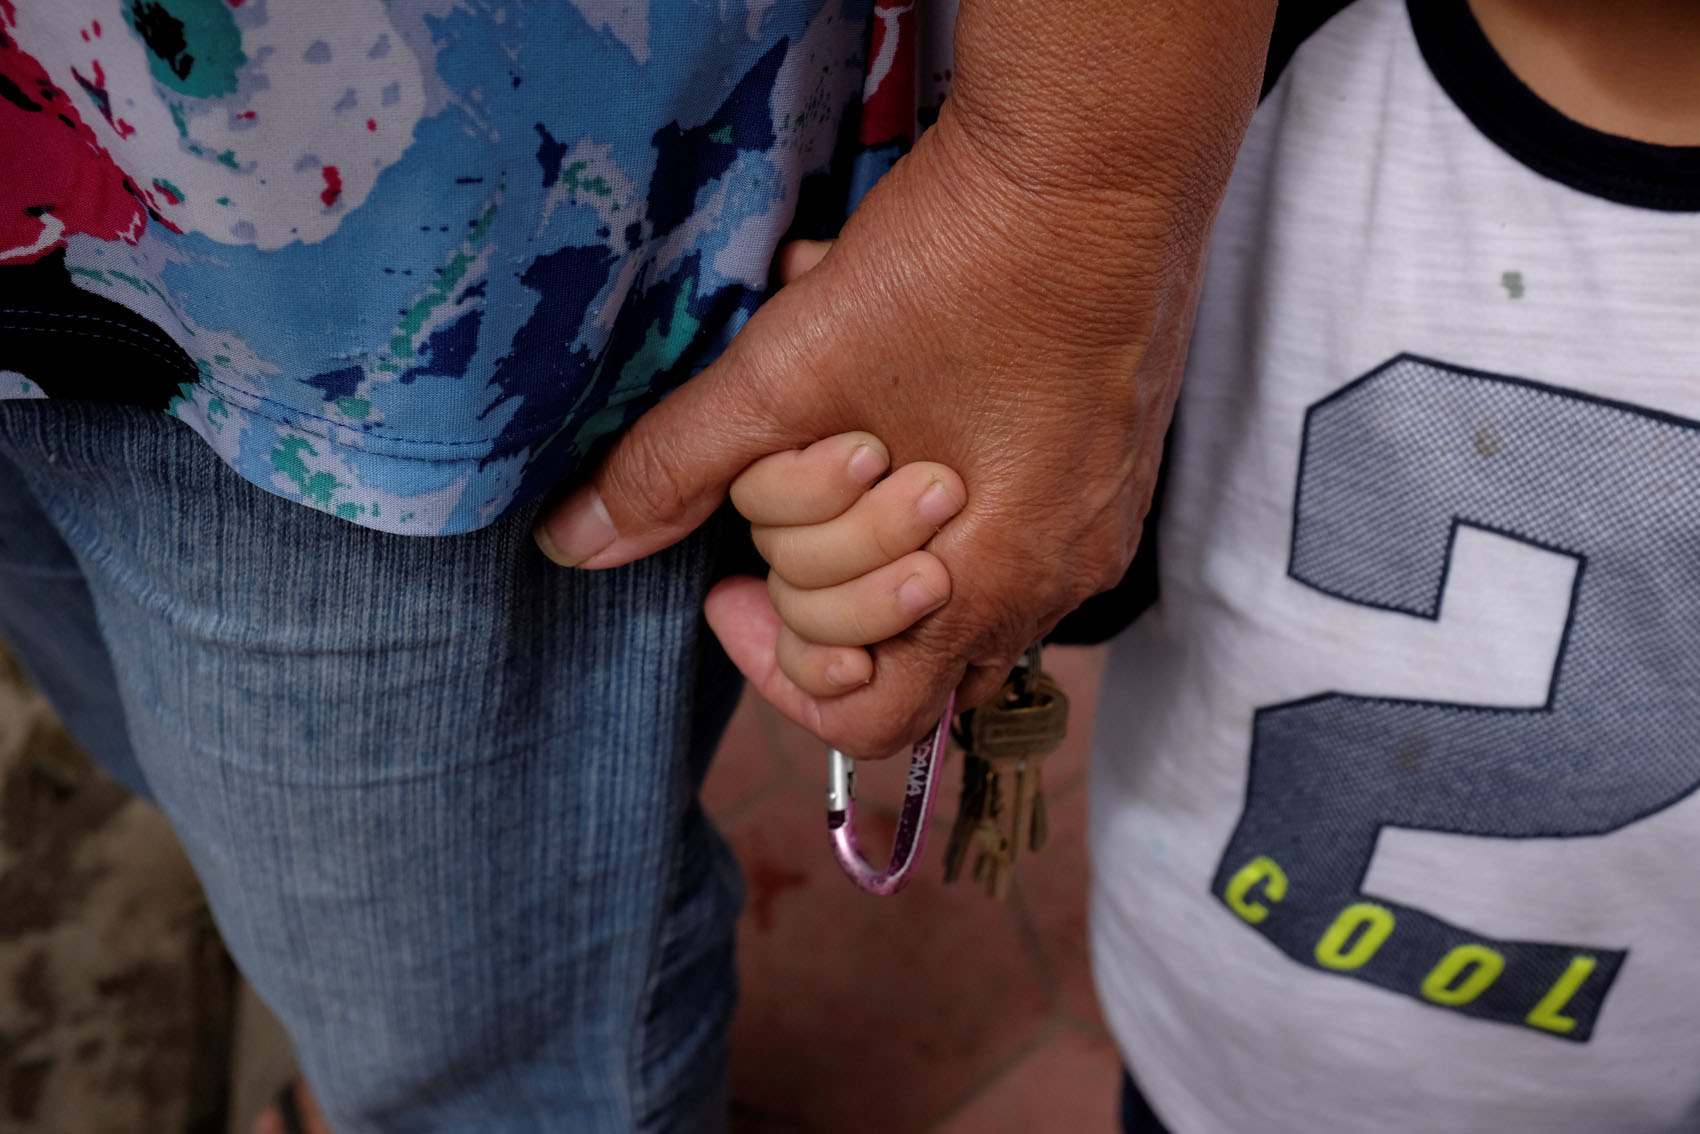 Niños sufren la ausencia de padres que huyen de Venezuela para buscar trabajo (Fotos)